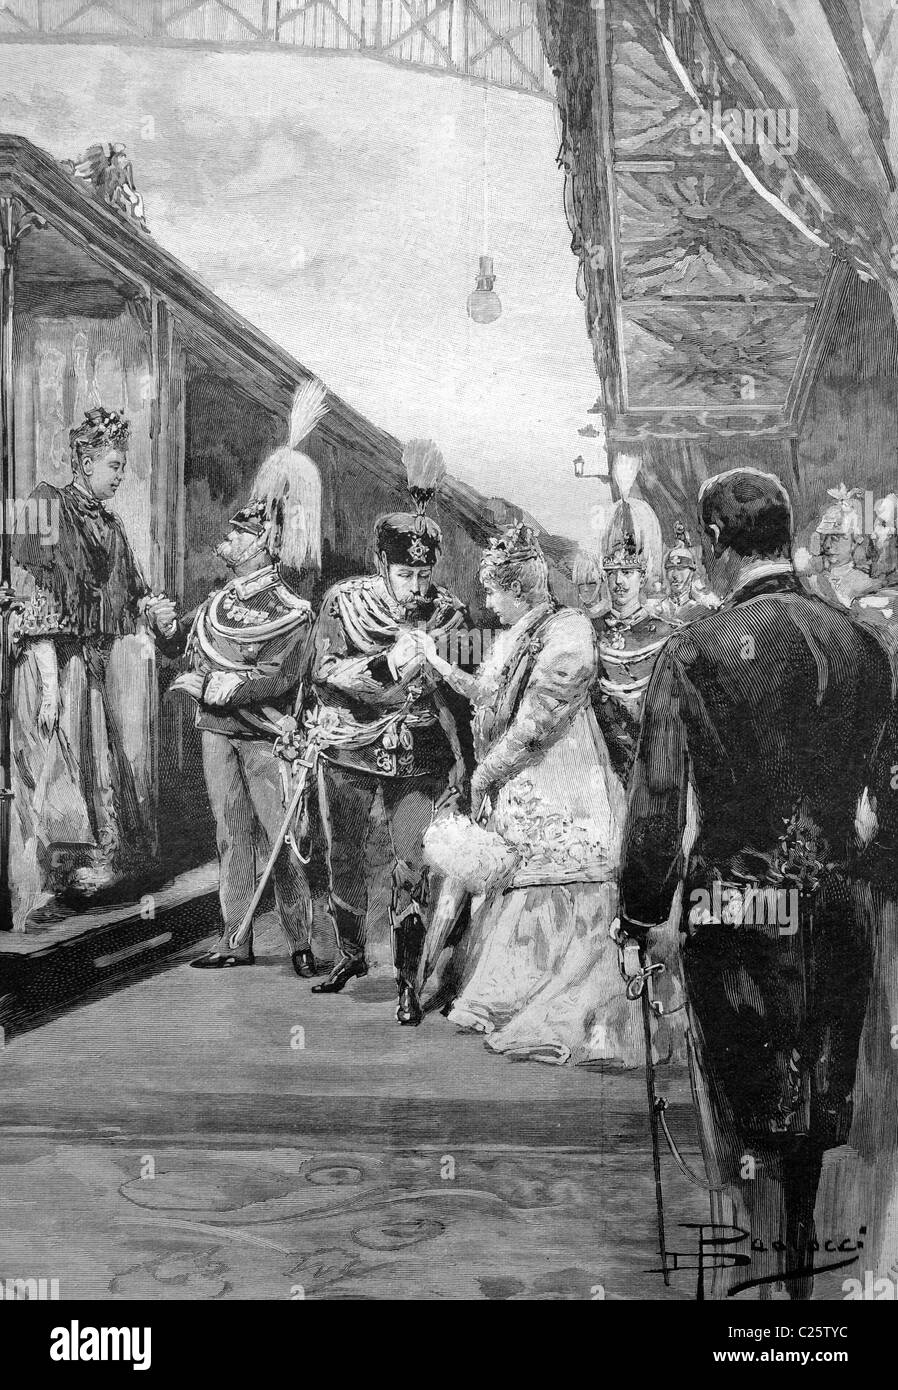 Visite de l'empereur et l'Impératrice de Rome, la réception à la station, illustration historique vers 1893 Banque D'Images